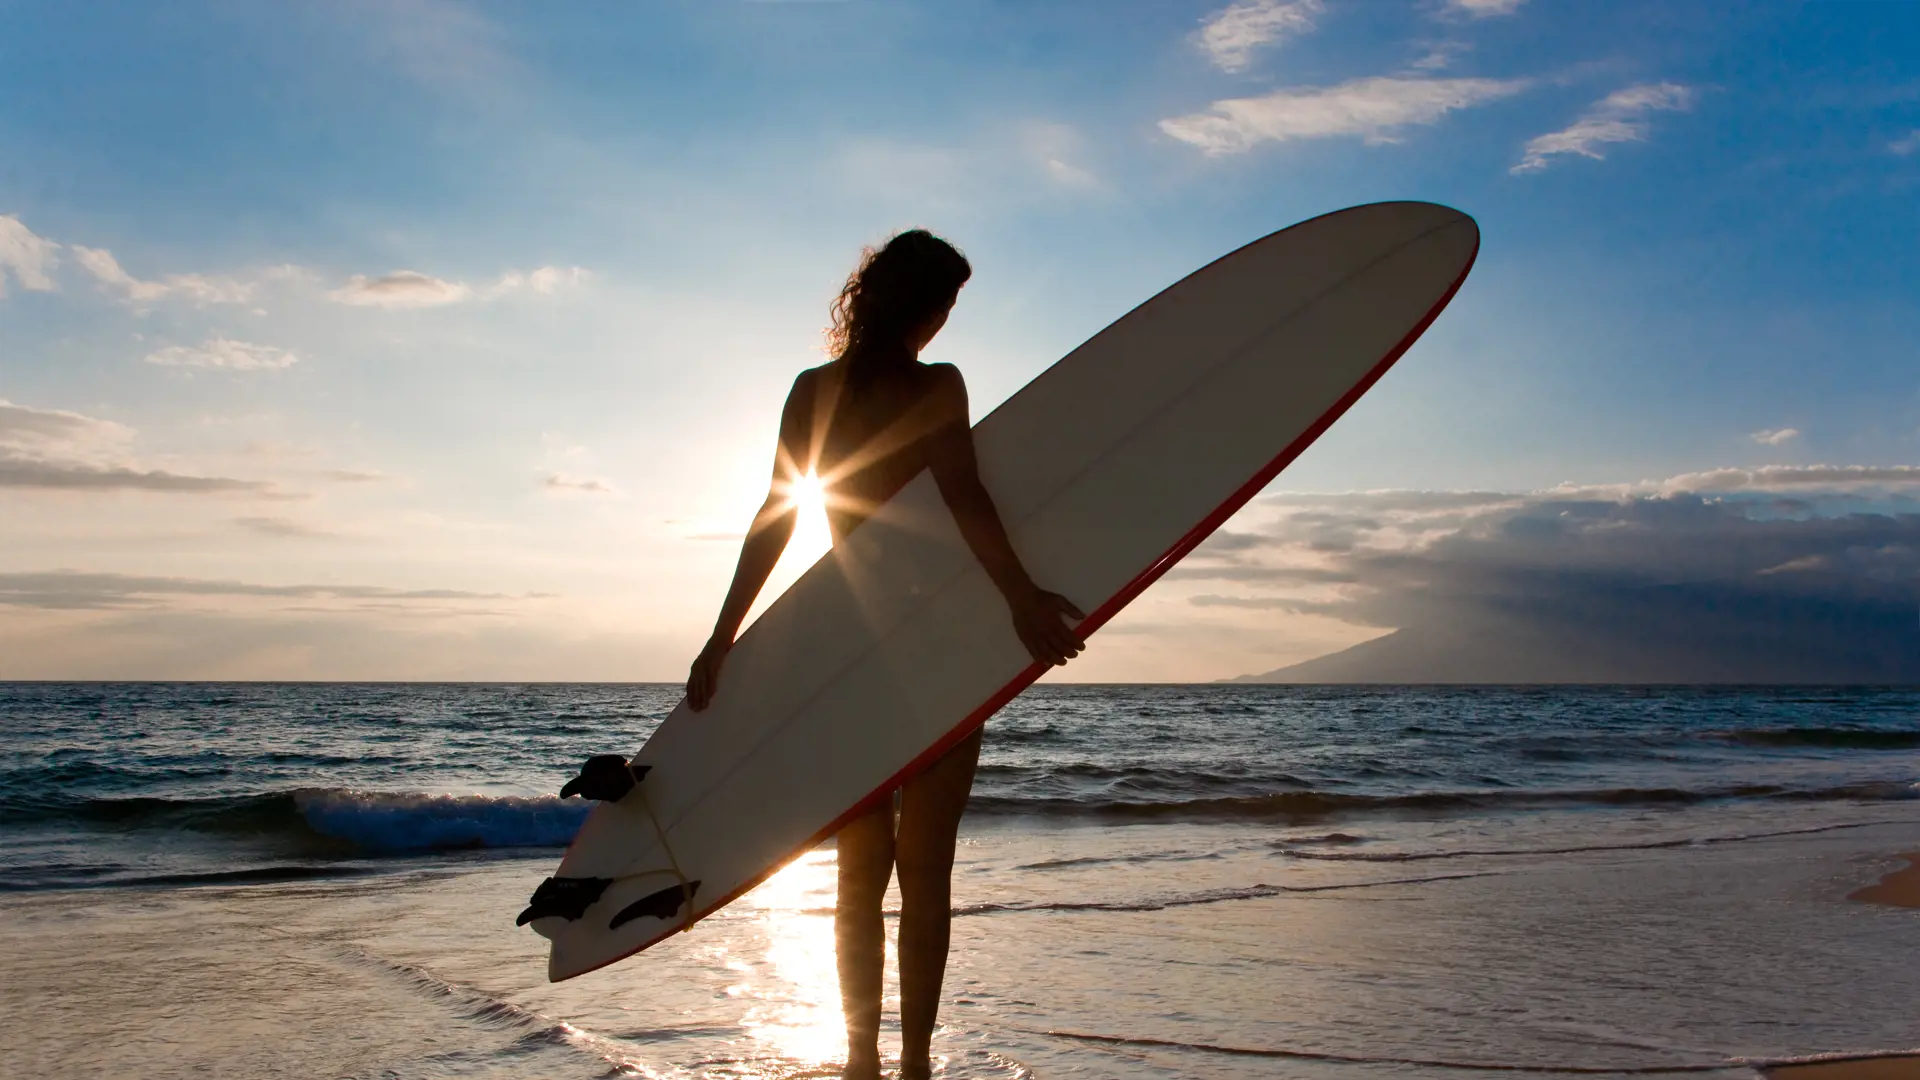 HAWAII - Surfing og den afslappede stemning er nogle af Hawaiis kendetegn.